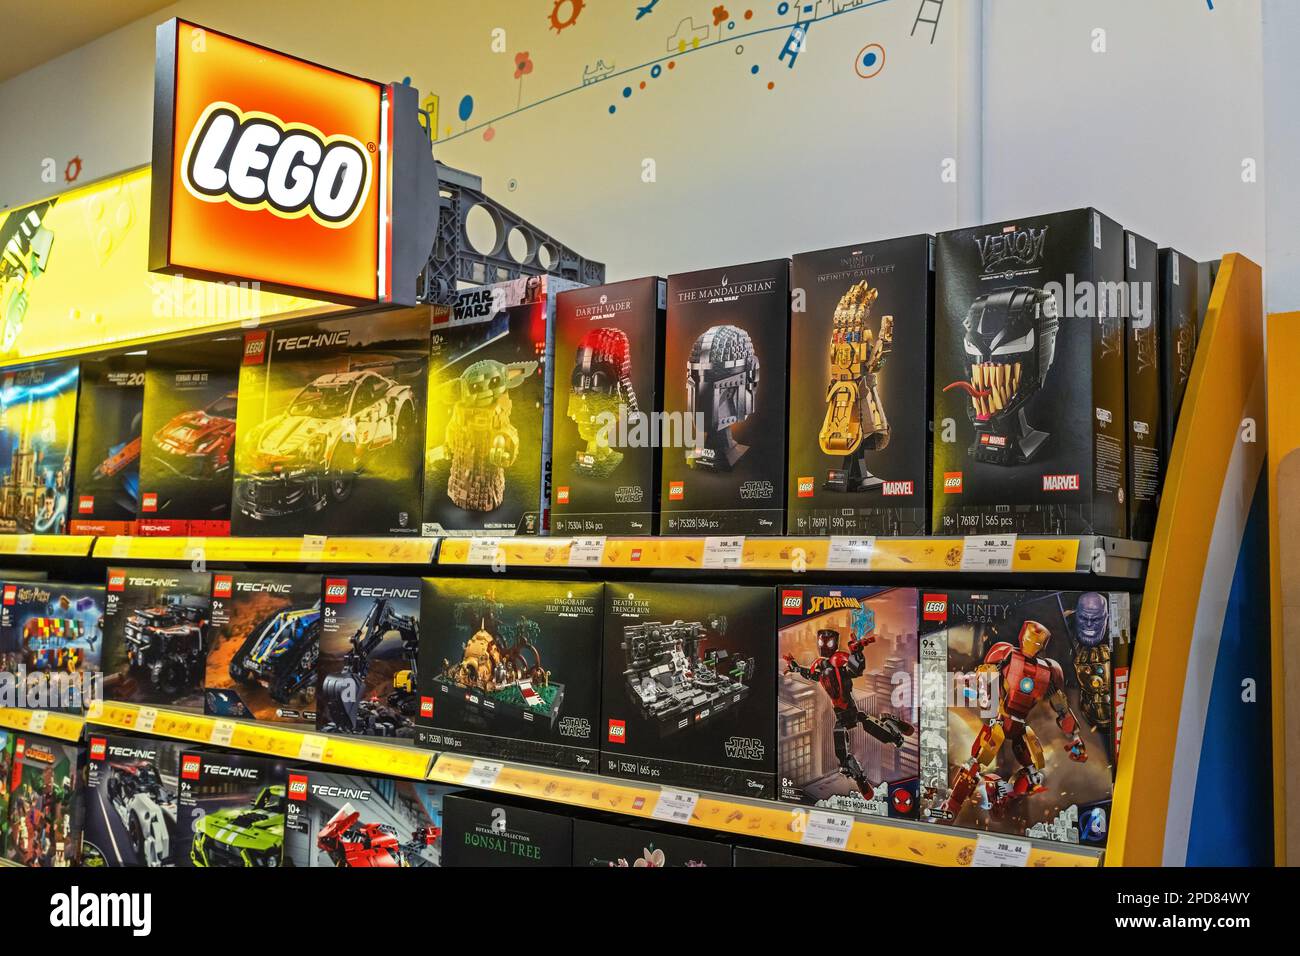 Un signe avec le logo Lego. Les jouets LEGO sont vendus dans un supermarché. Une sélection de jouets Lego emballés à vendre sur une étagère dans un magasin. Minsk, Bélarus, 2023 Banque D'Images